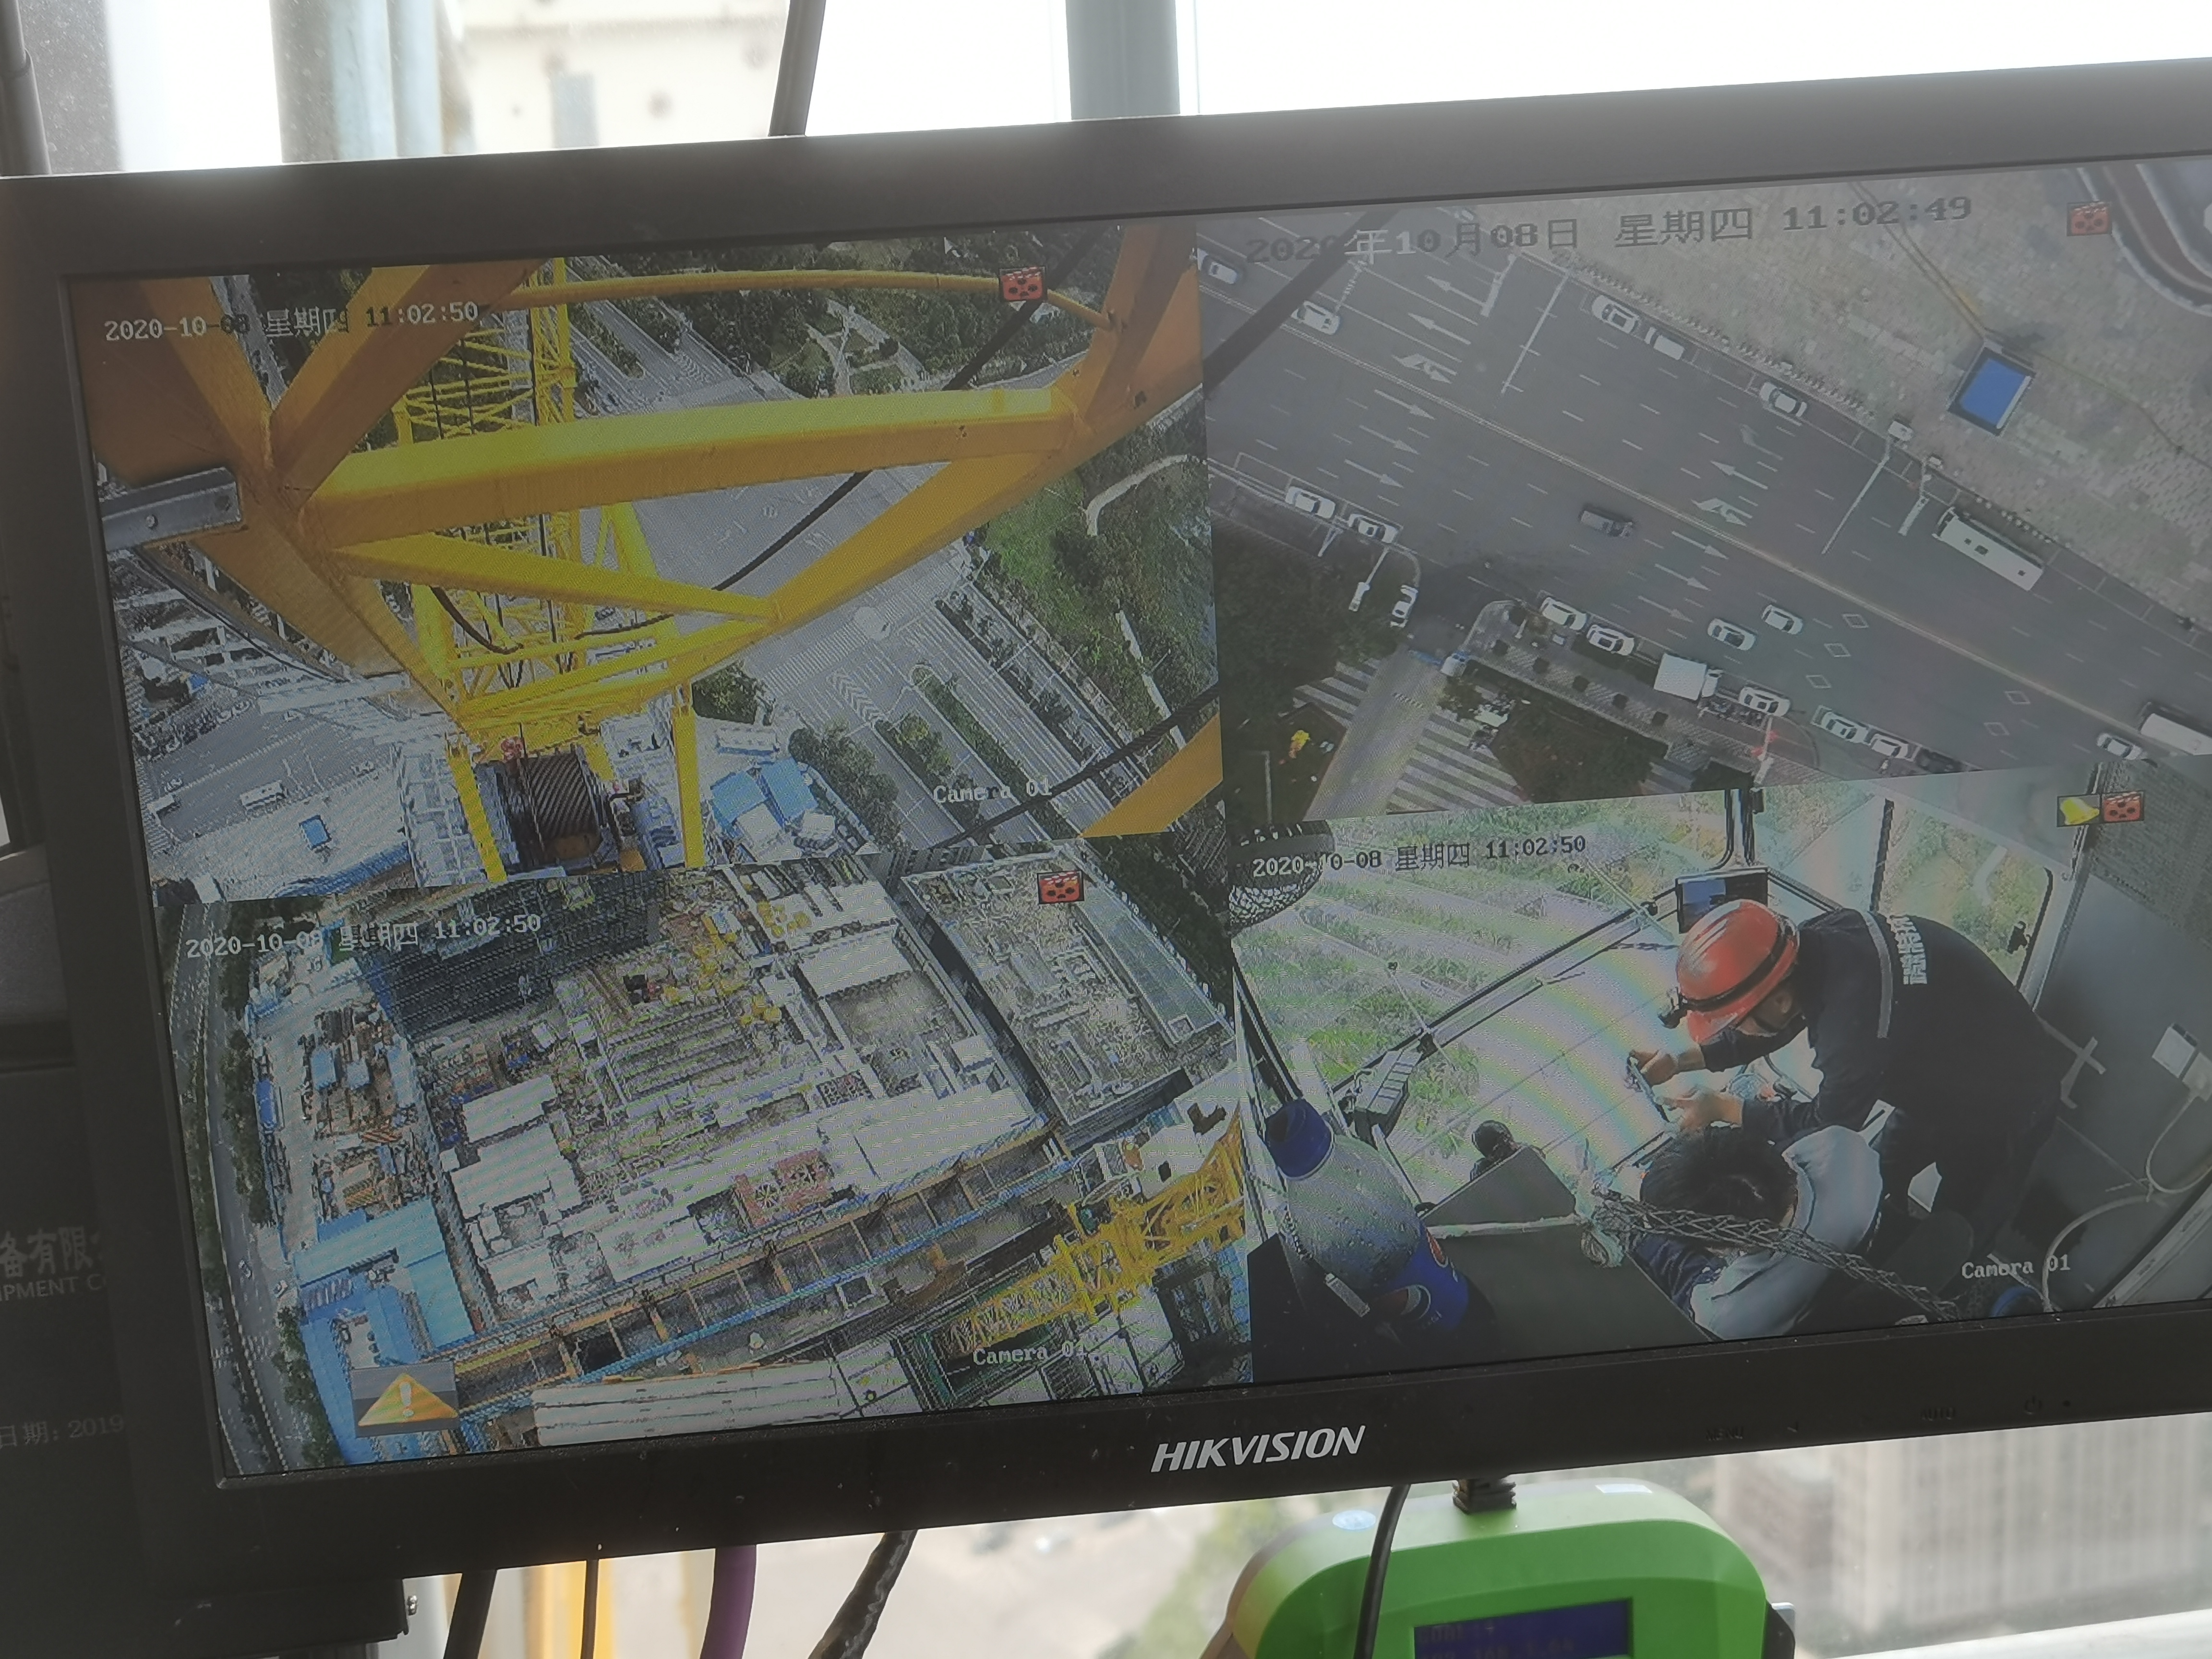 透過駕駛室的視頻監控看到微特的工程師正在作業